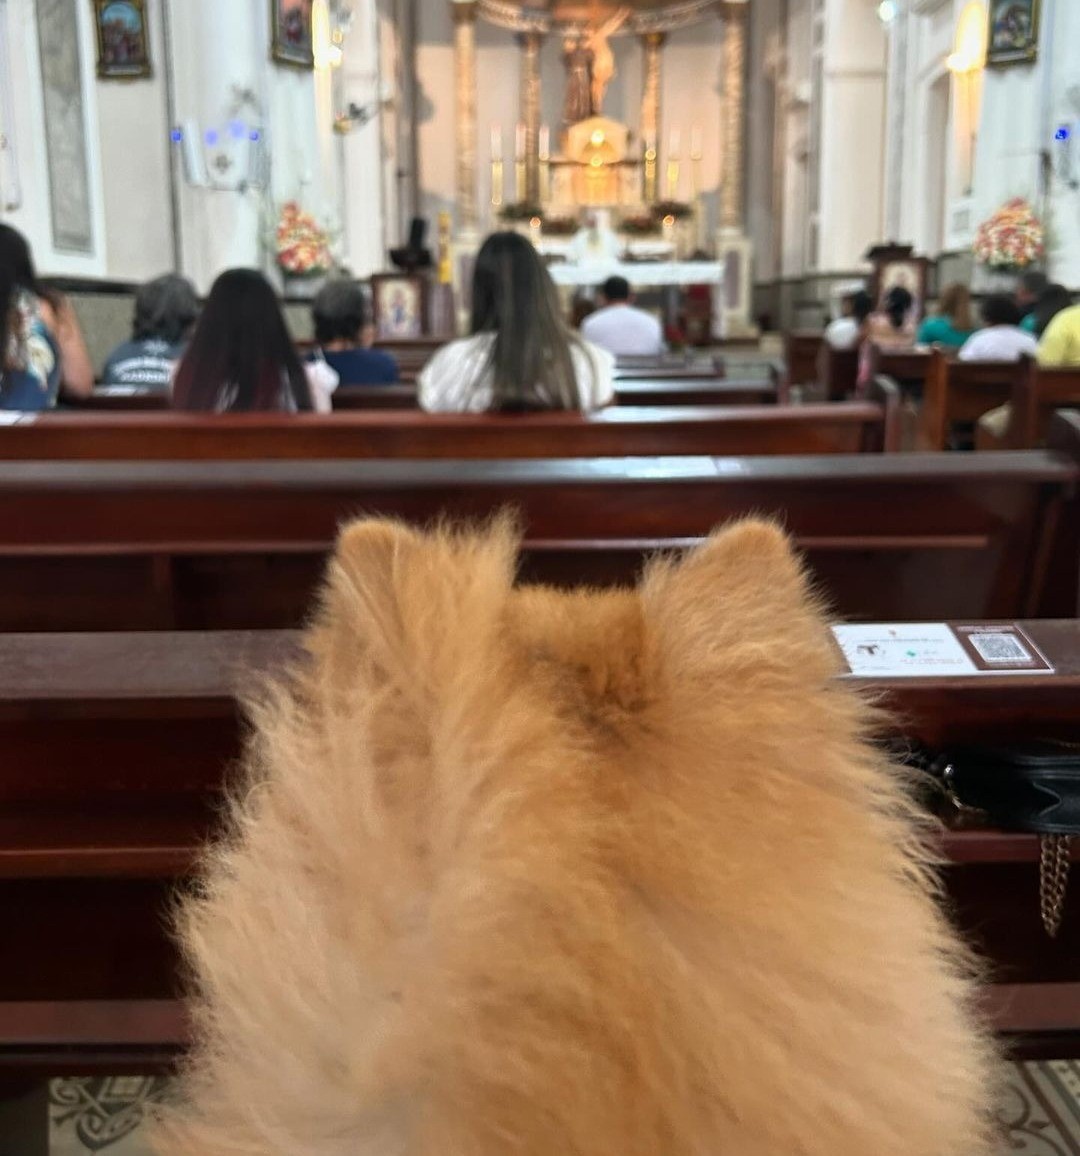 Animais vão à missa e recebem benção em Belém: 'nós tutores nos sentimos muito acolhidos'